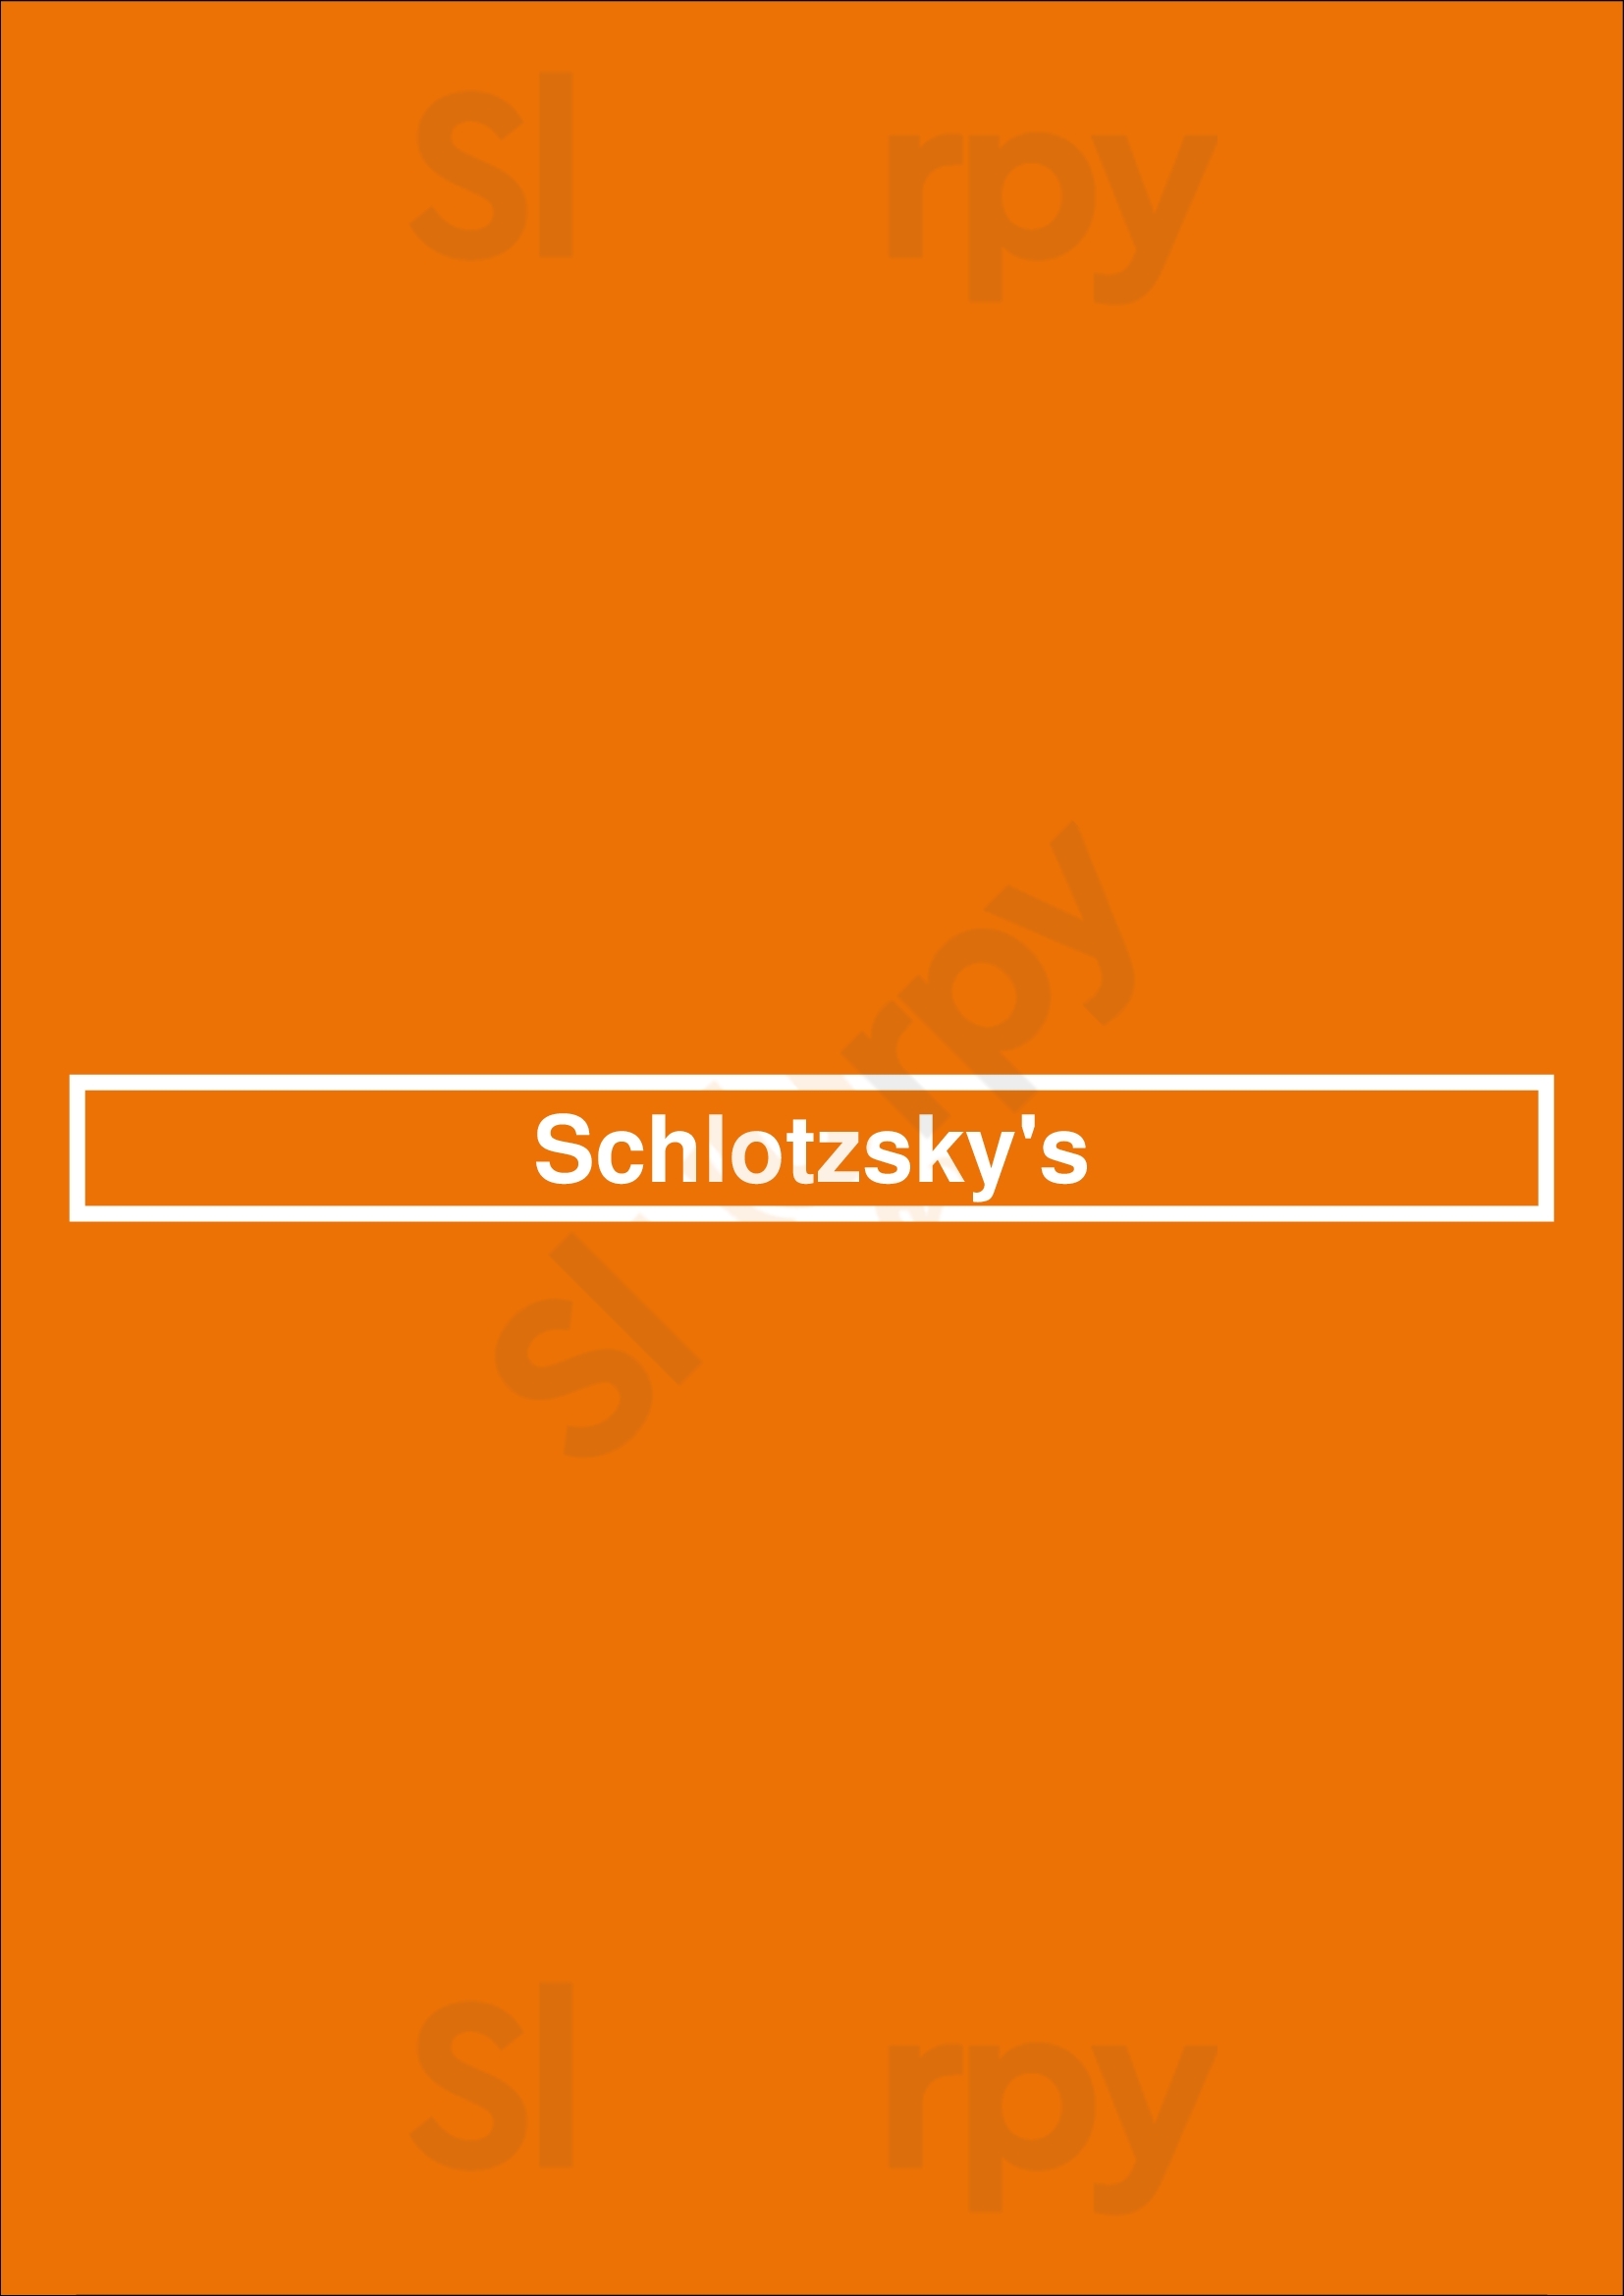 Schlotzsky's Houston Menu - 1